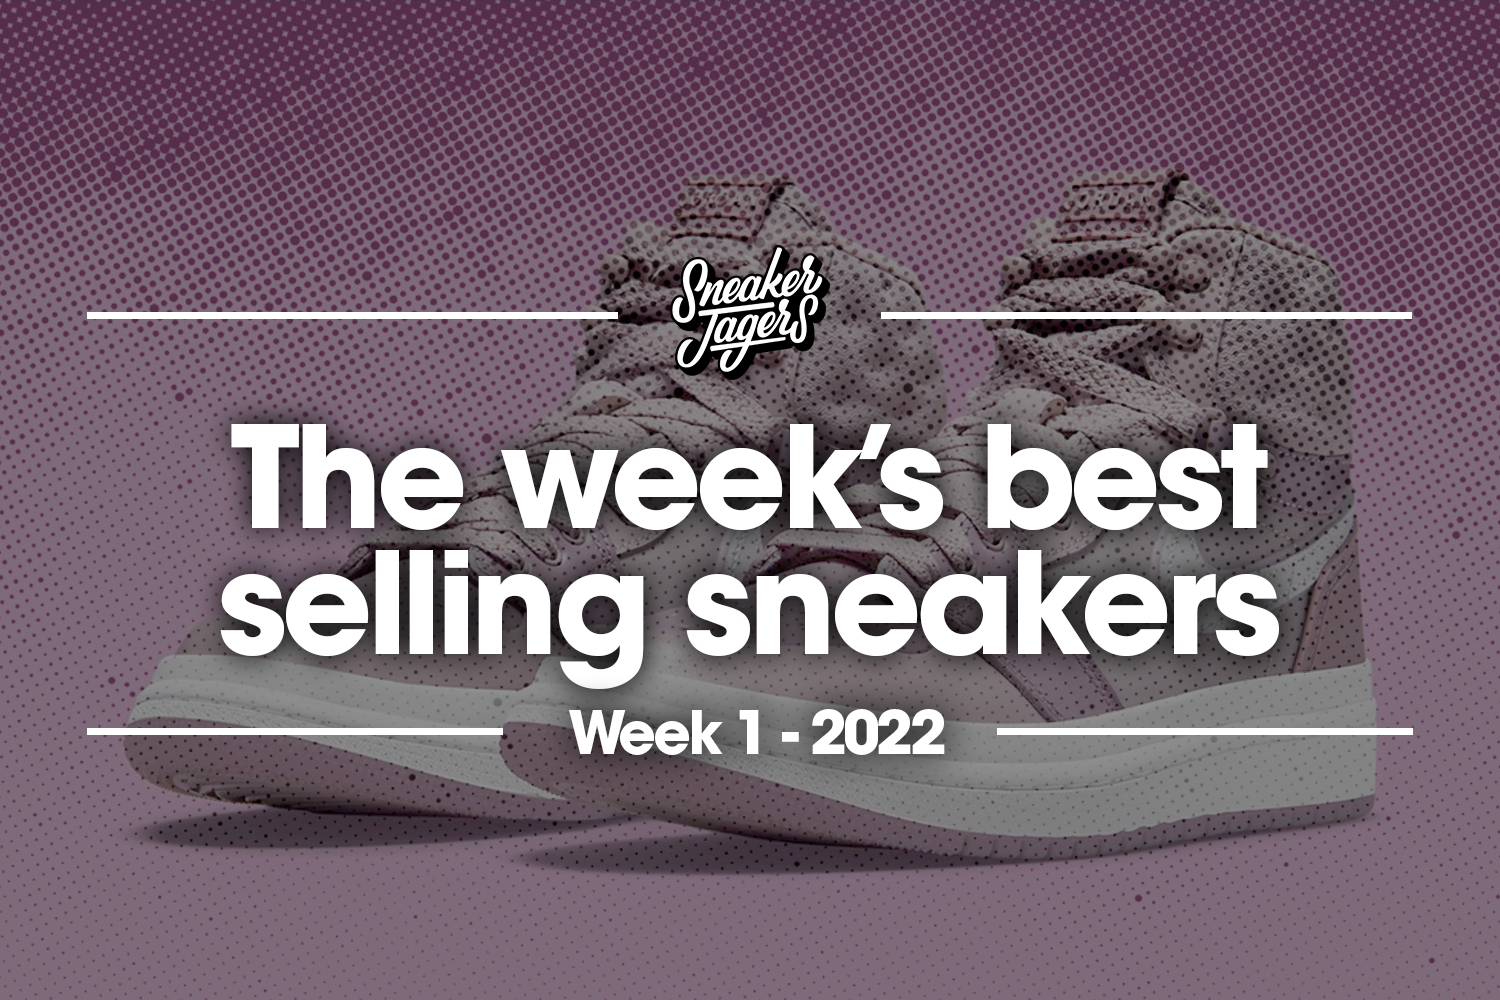 De 5 bestverkochte sneakers van week 1